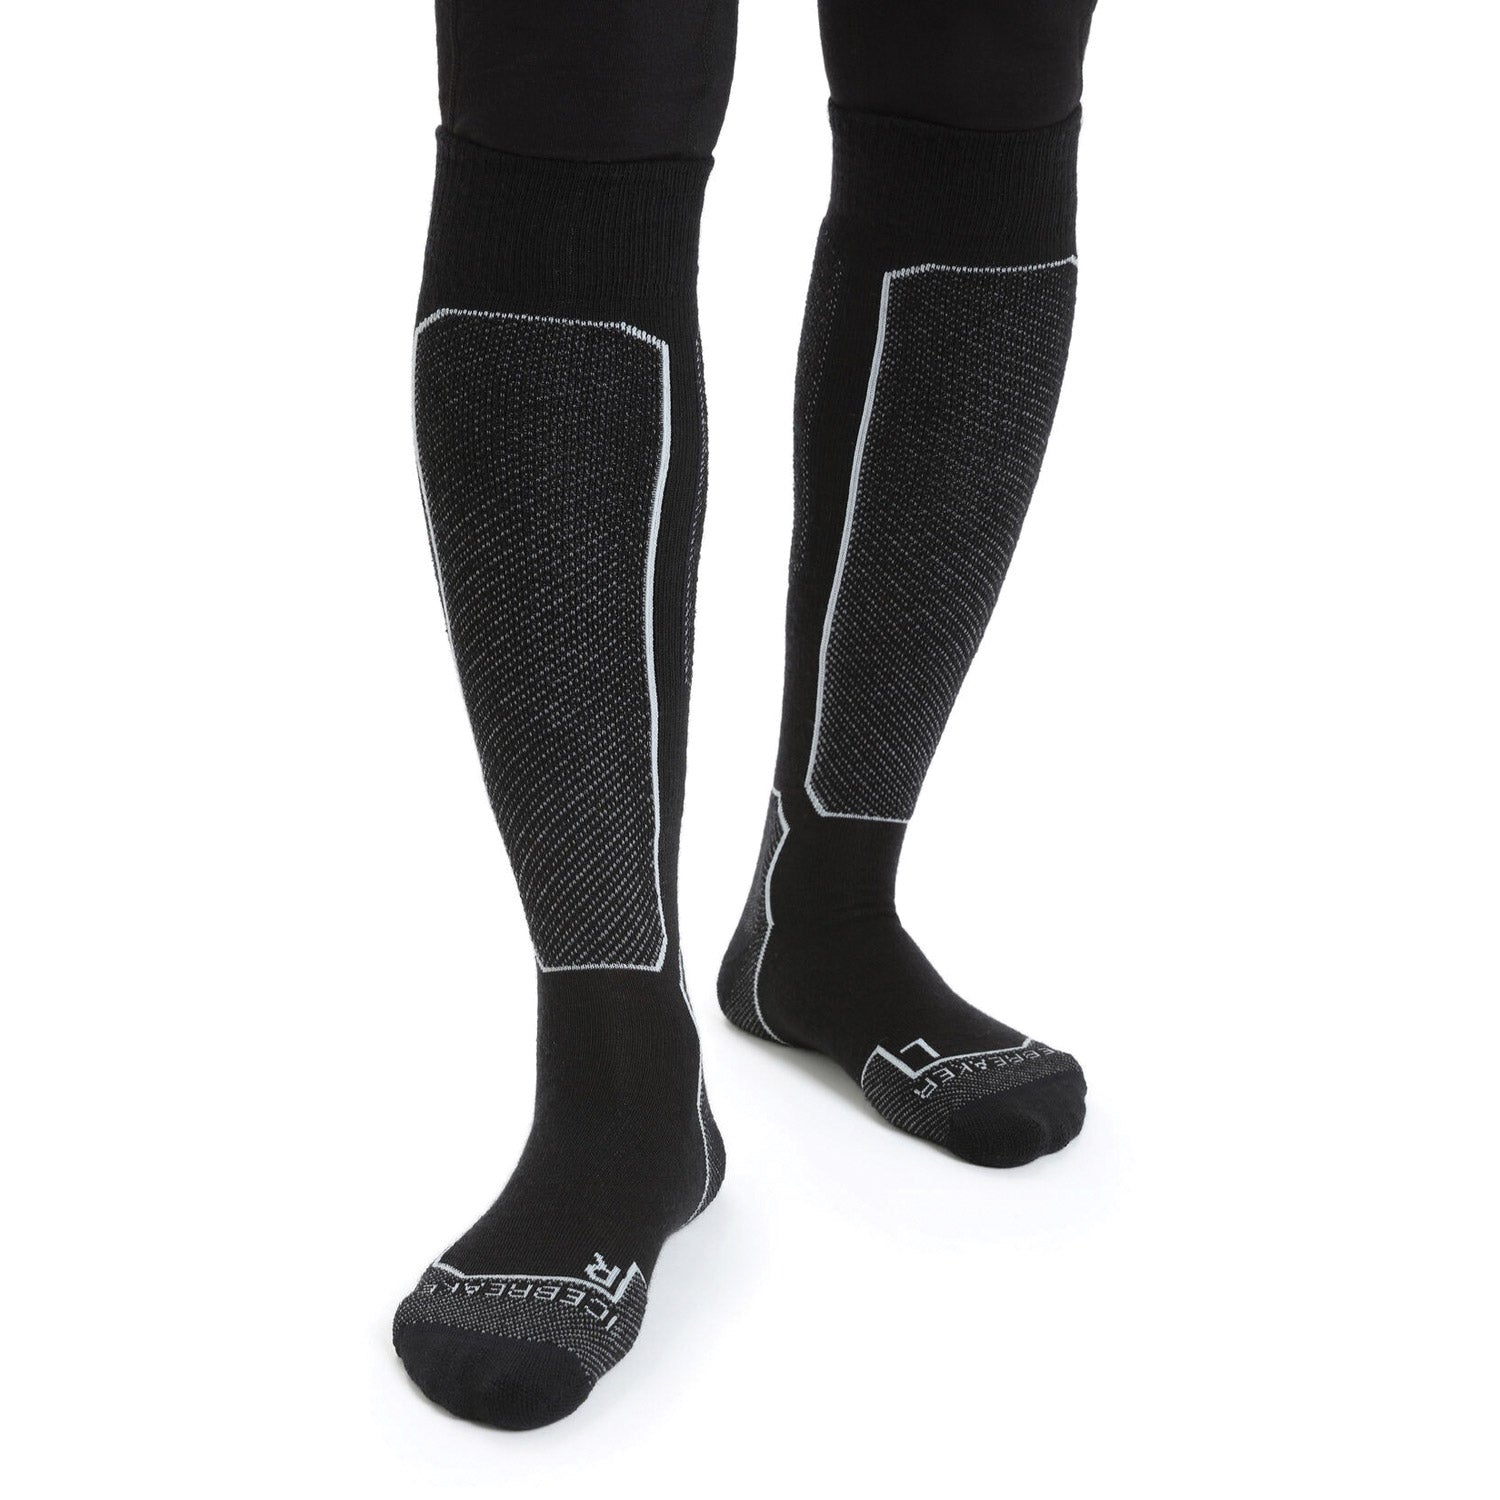 Women's Merino Ski+ Light Over the Calf Socks